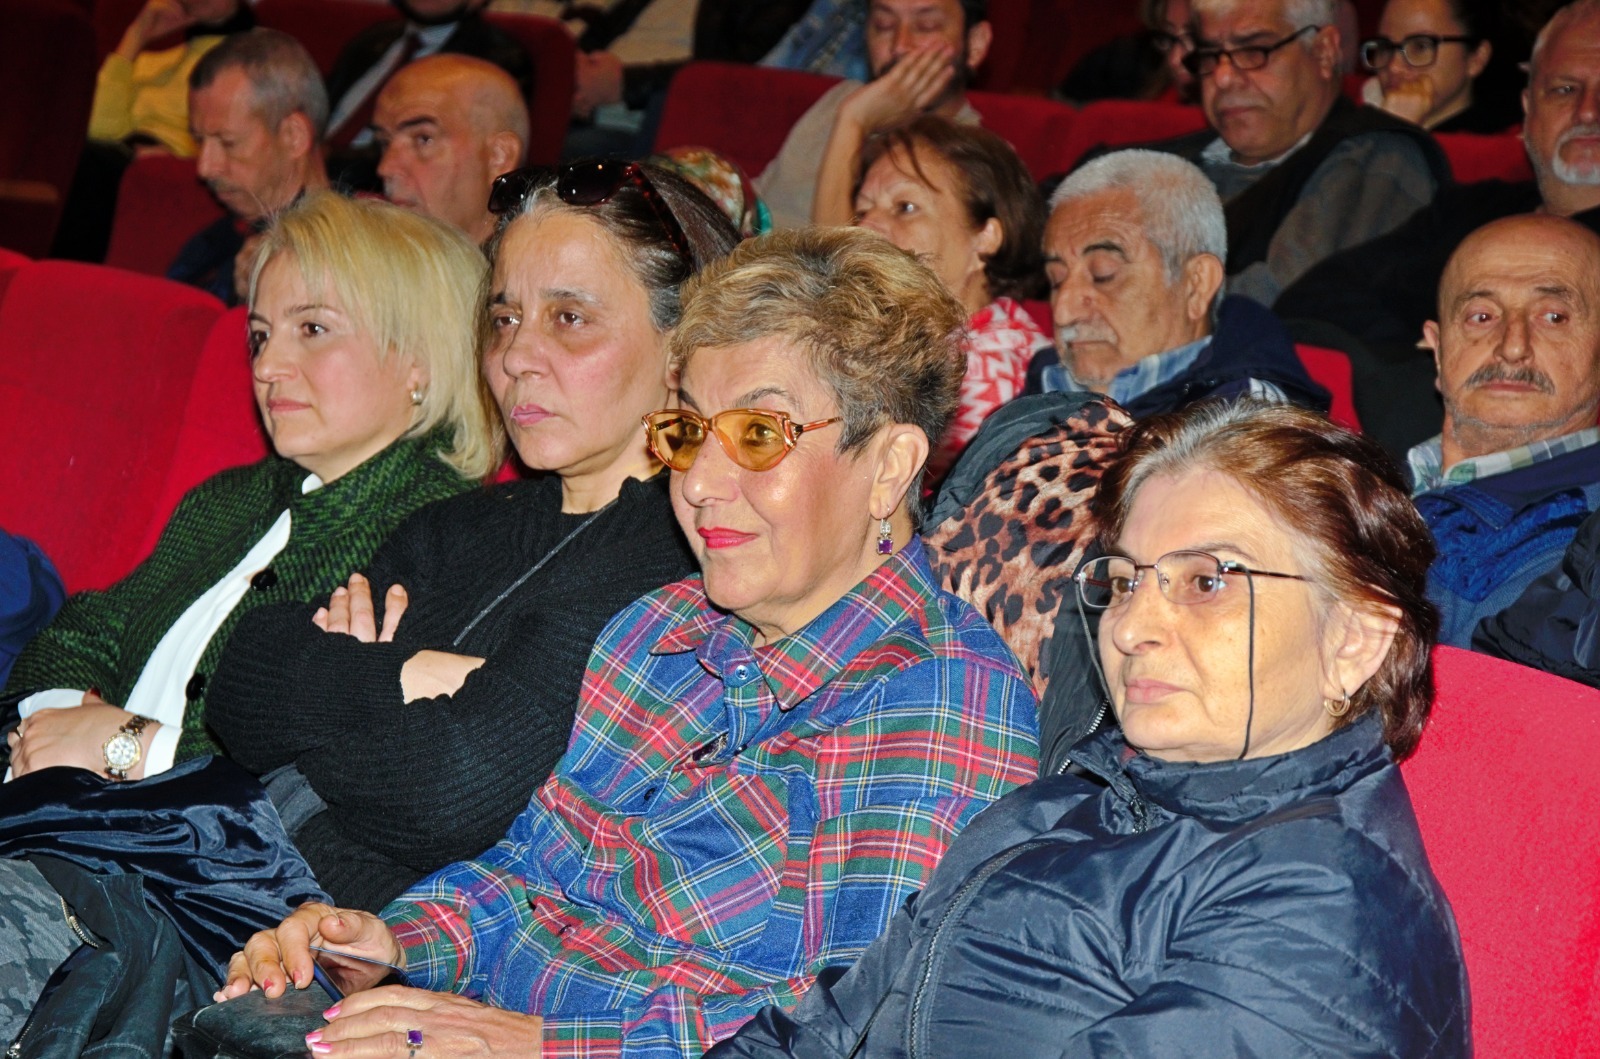 İzmir’de mahalle afet gönüllüleri eğitimleri başladı